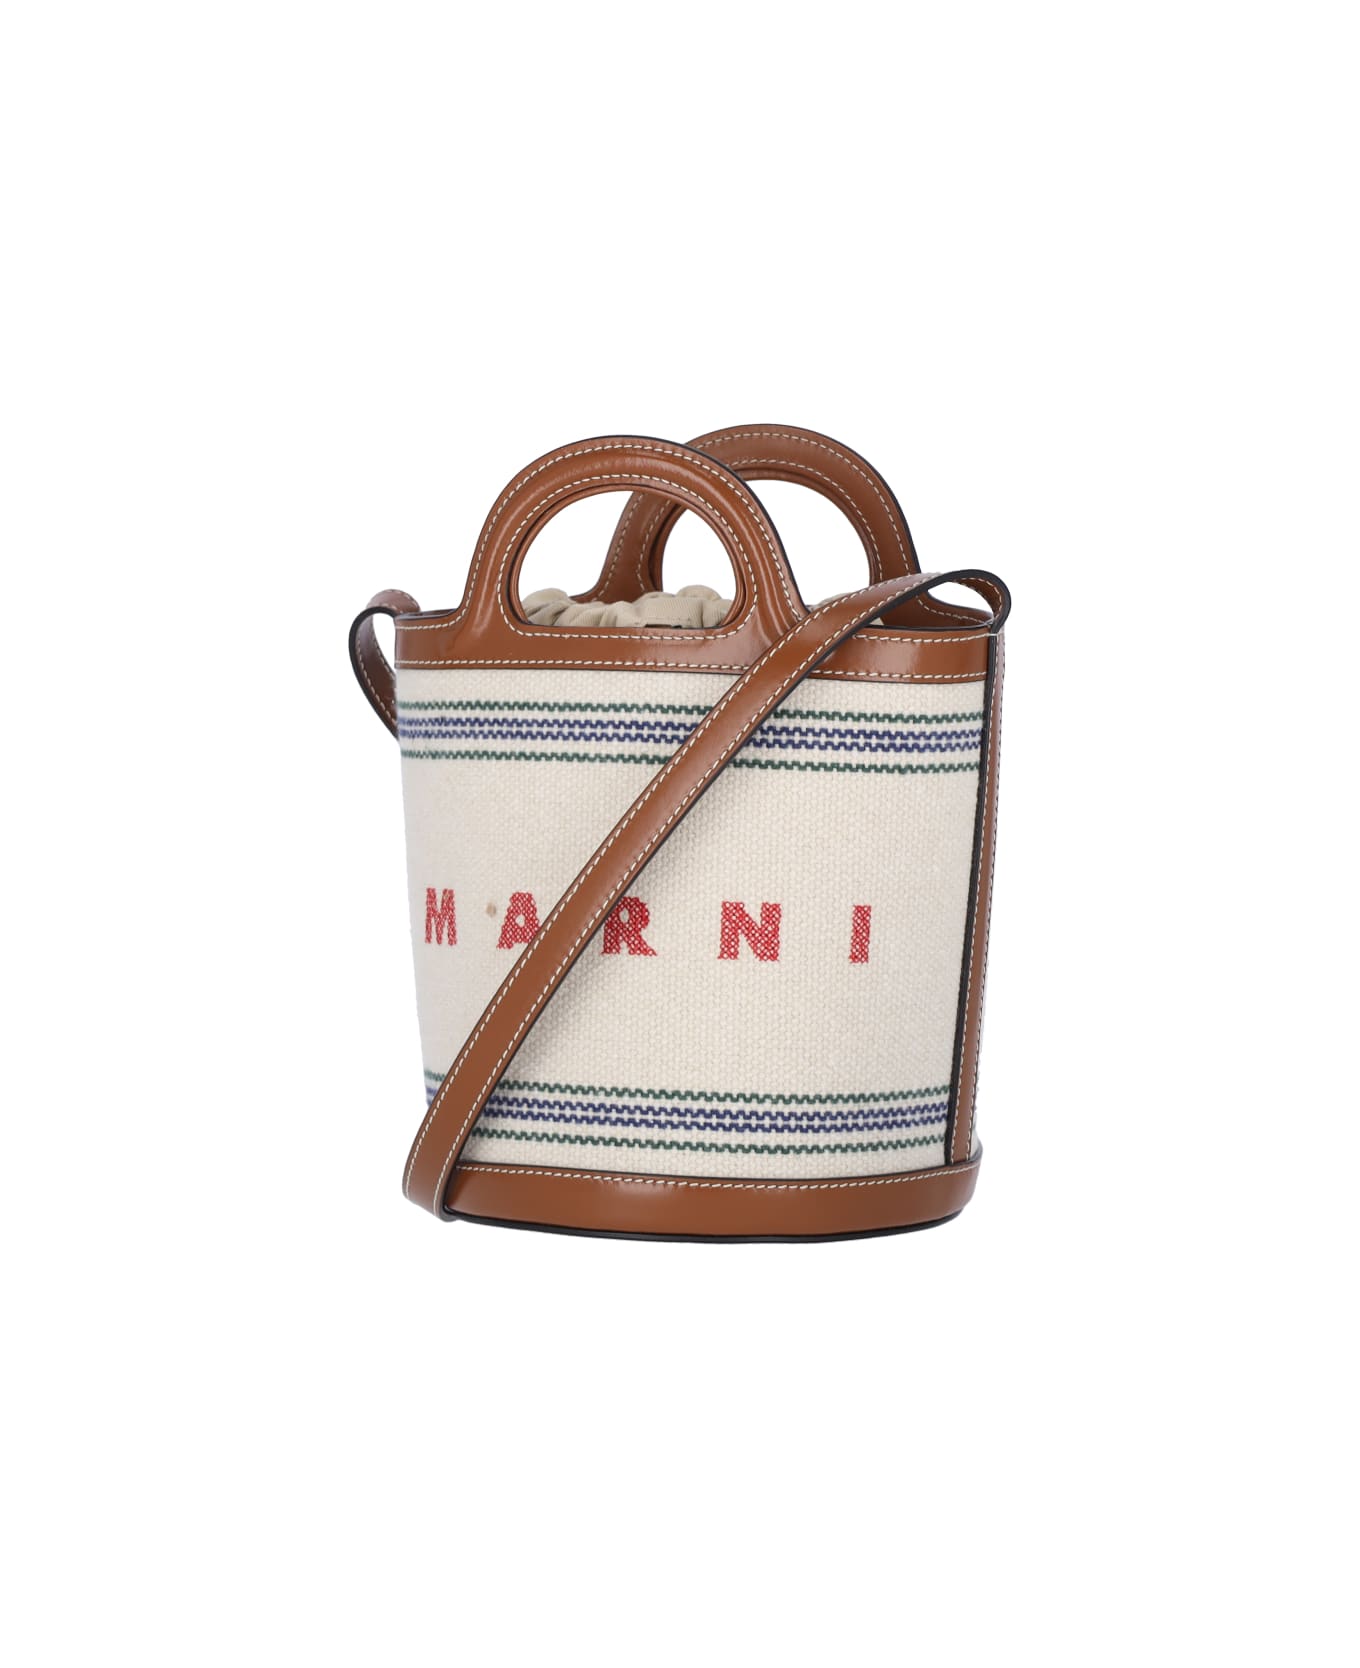 Marni Small Bucket Bag 'tropicalia' - Natural/moka